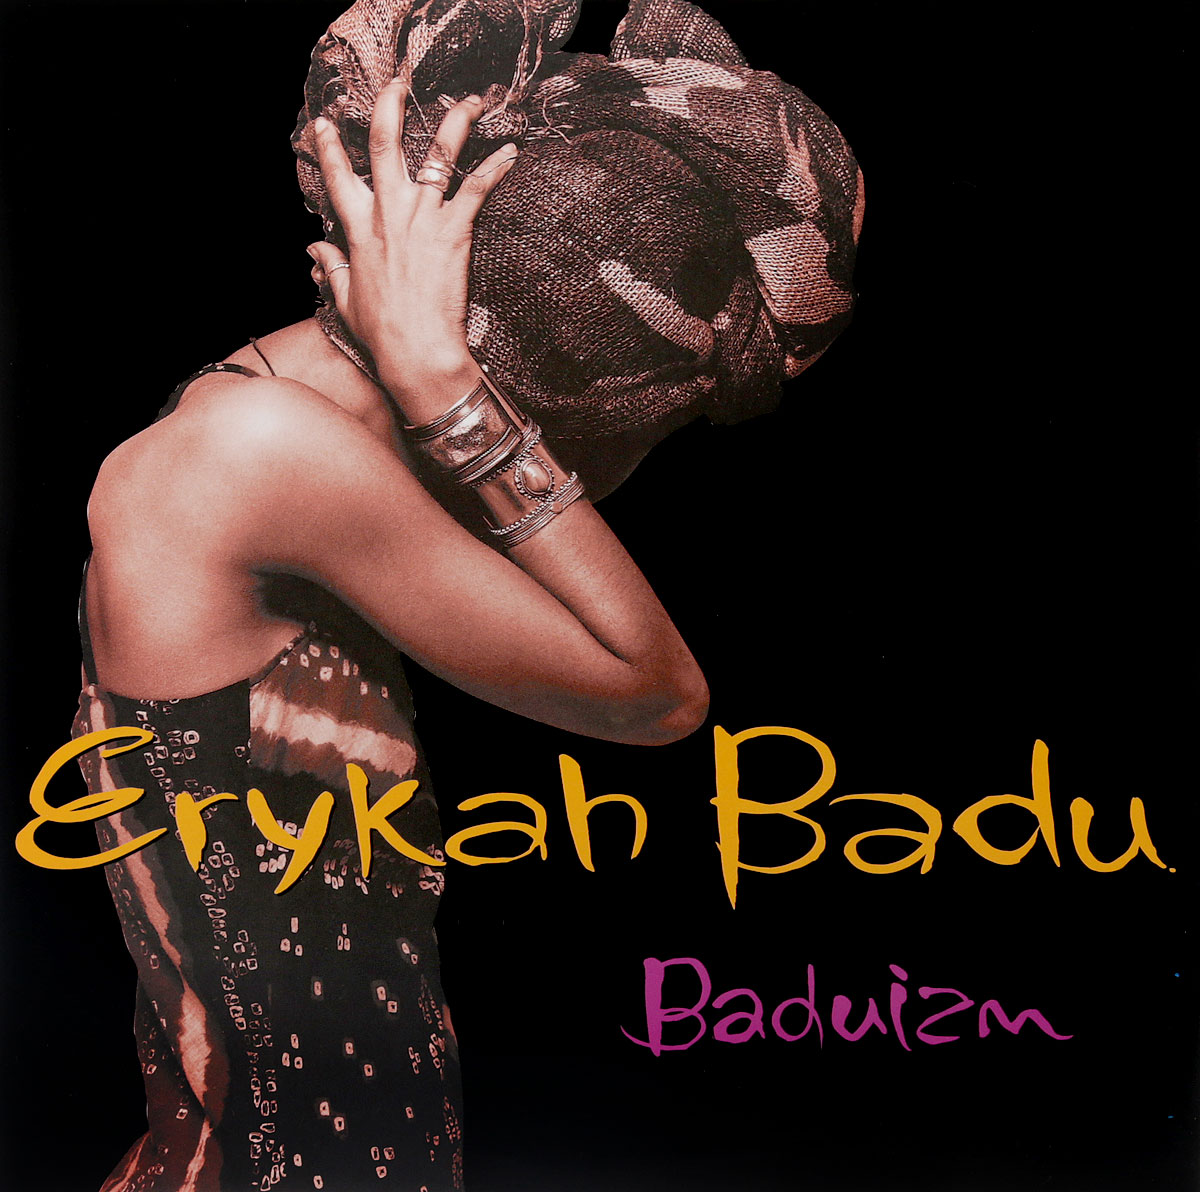 Erykah Badu. Baduizm (2 LP)